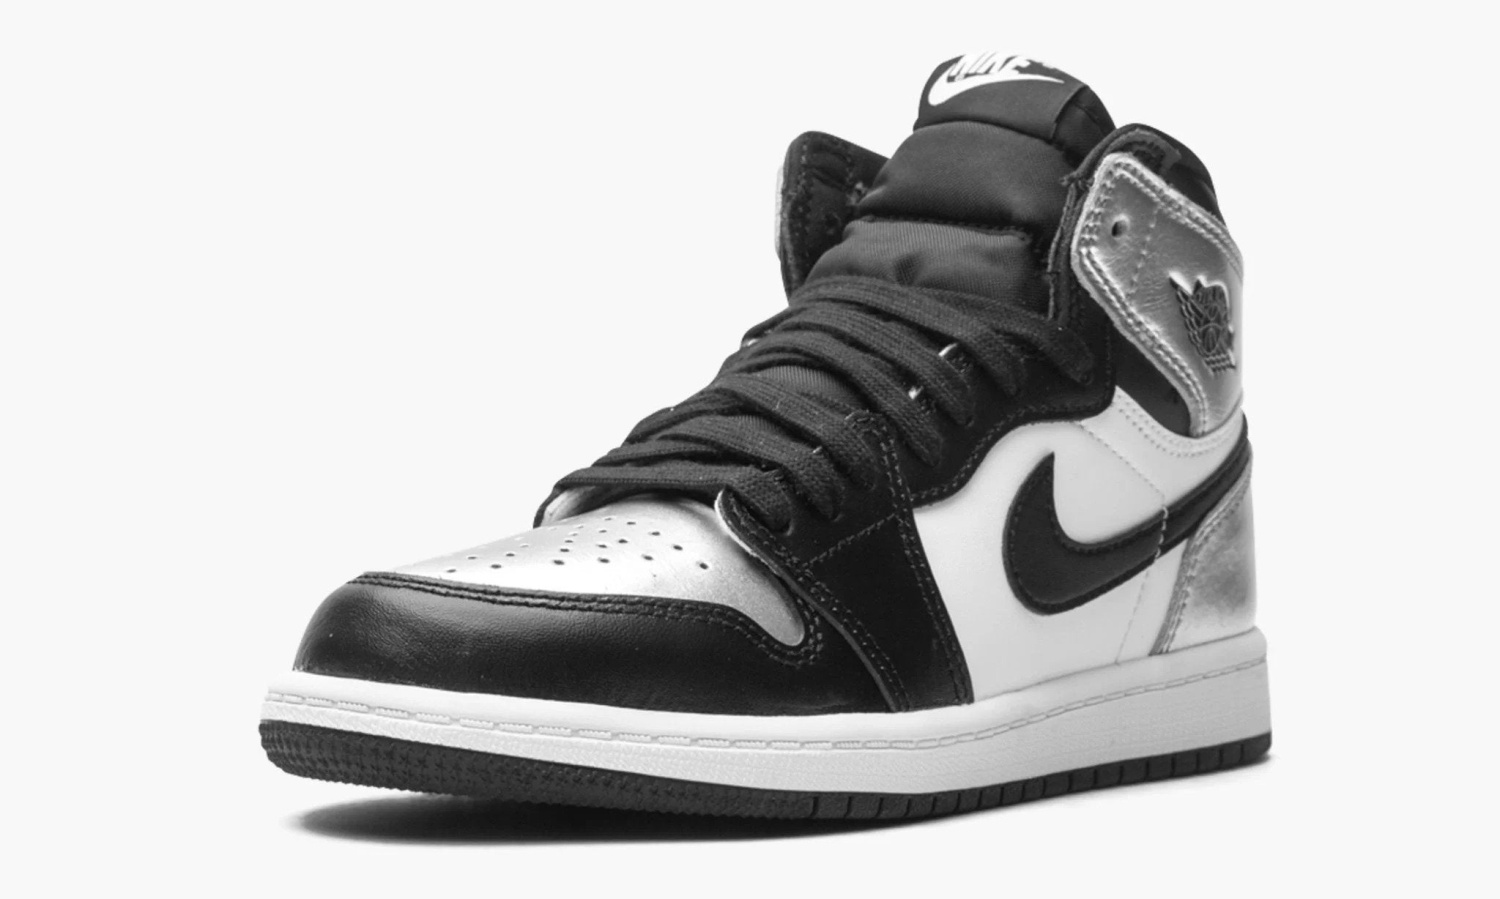 фото Air Jordan 1 Retro High PS "Silver Toe" (Kids) (Nike PS)-CU0449 001